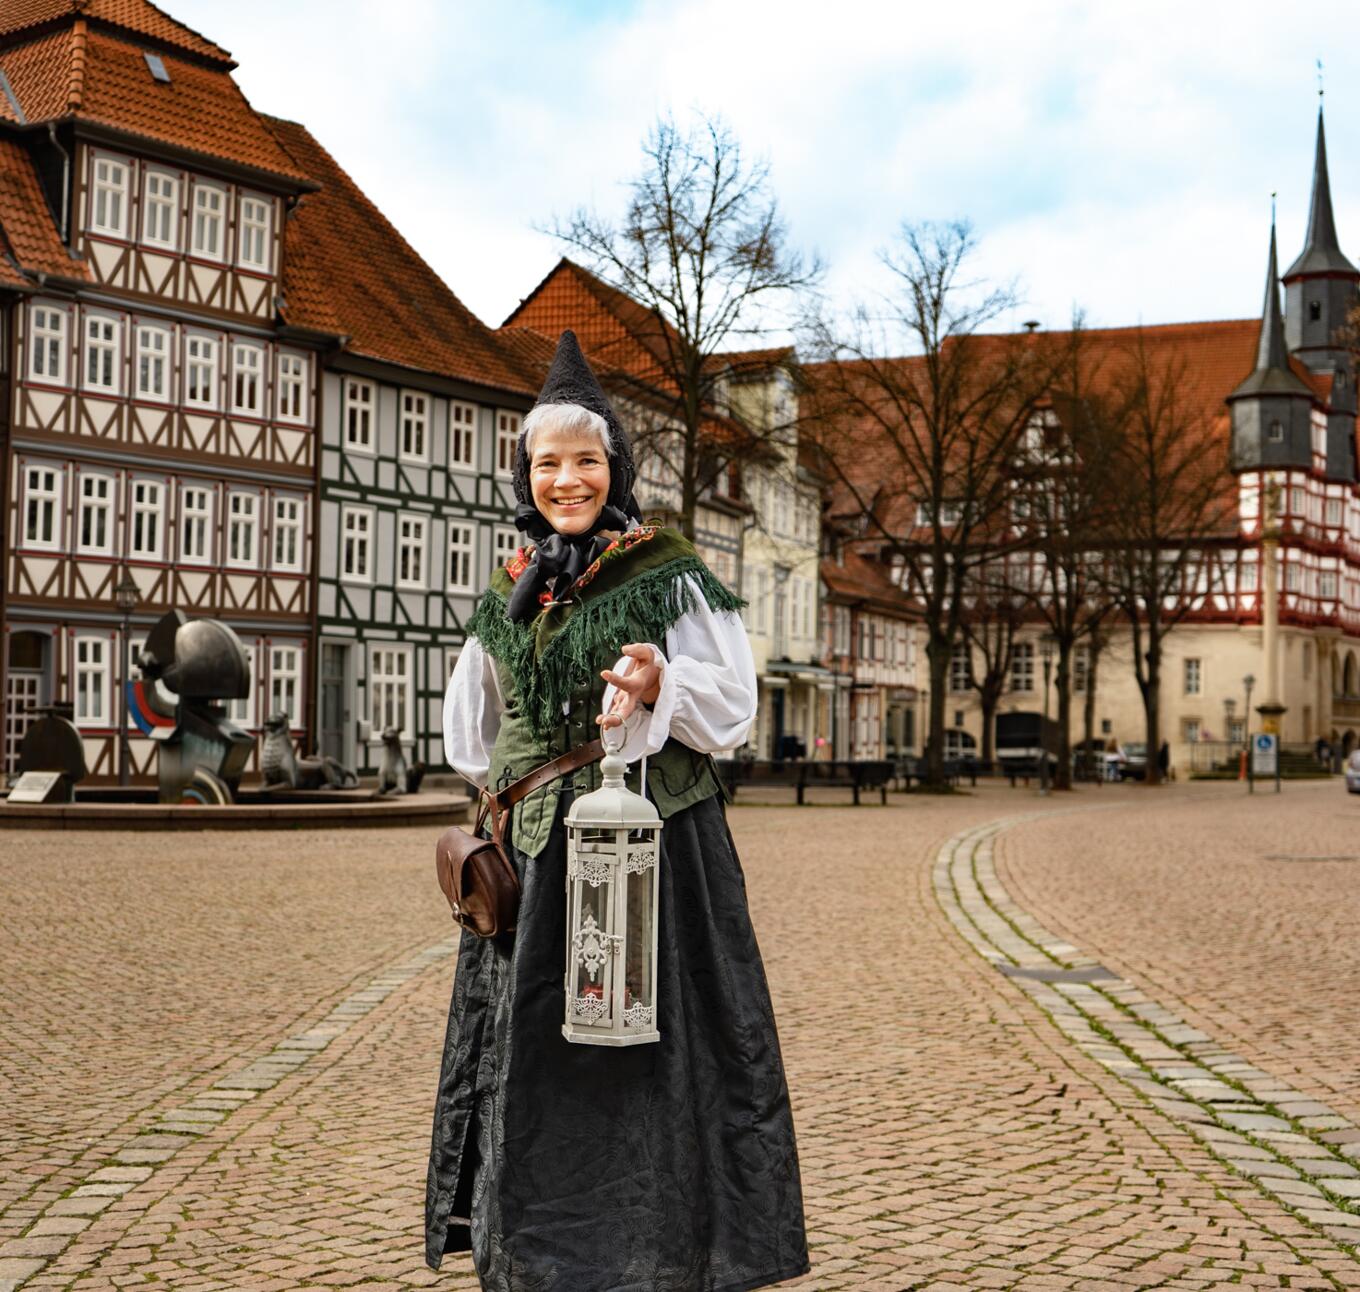 Stadtführerin in historischer Tracht auf dem Marktplatz in Duderstadt